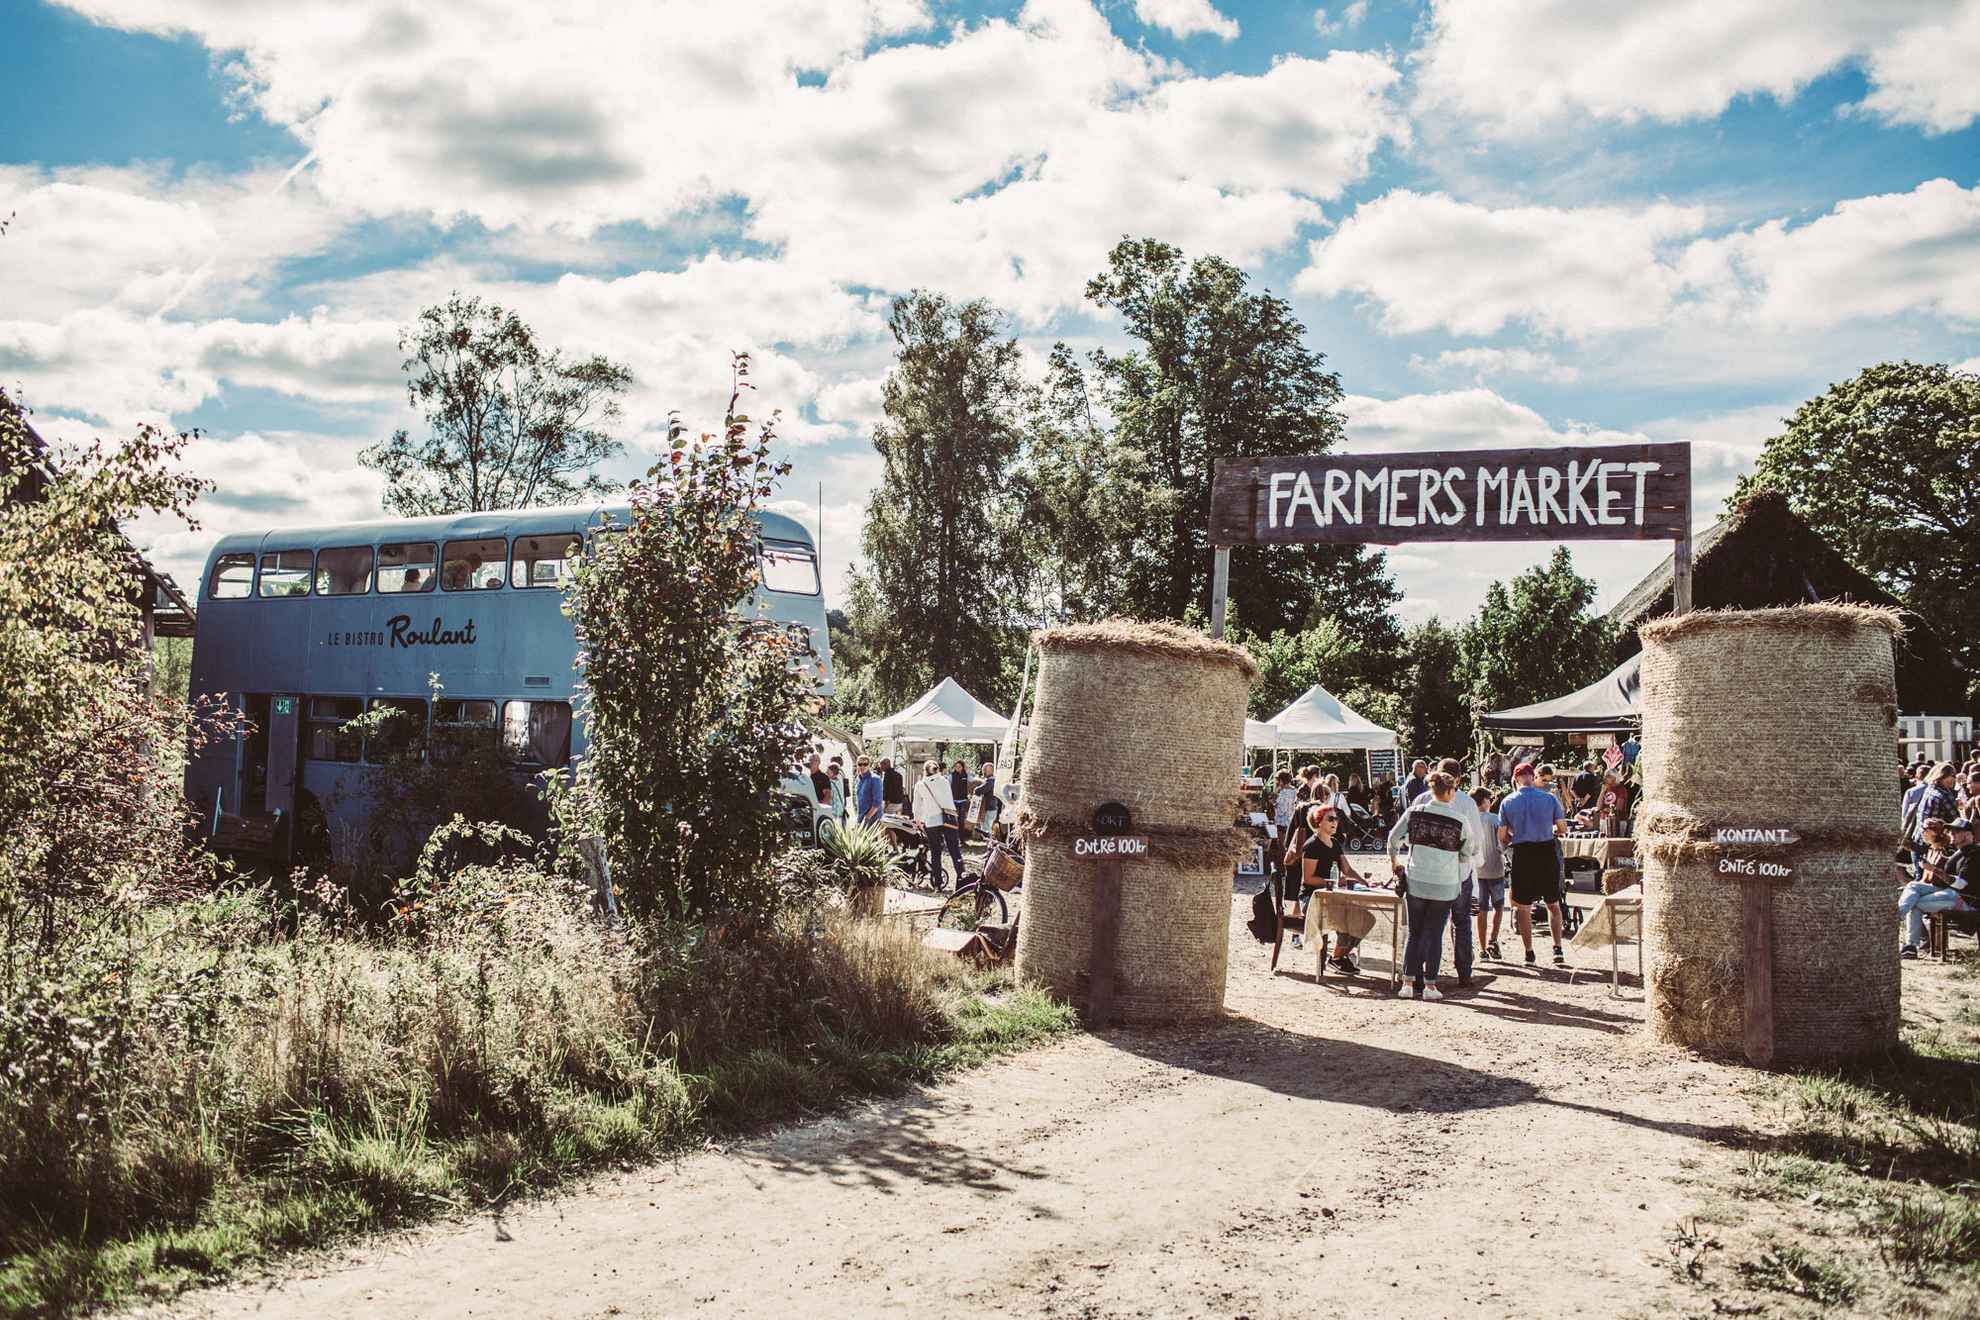 On peut voir un grand panneau indiquant « Farmers Market » à l'entrée d'un marché rural. Un bus bleu clair est garé à côté.